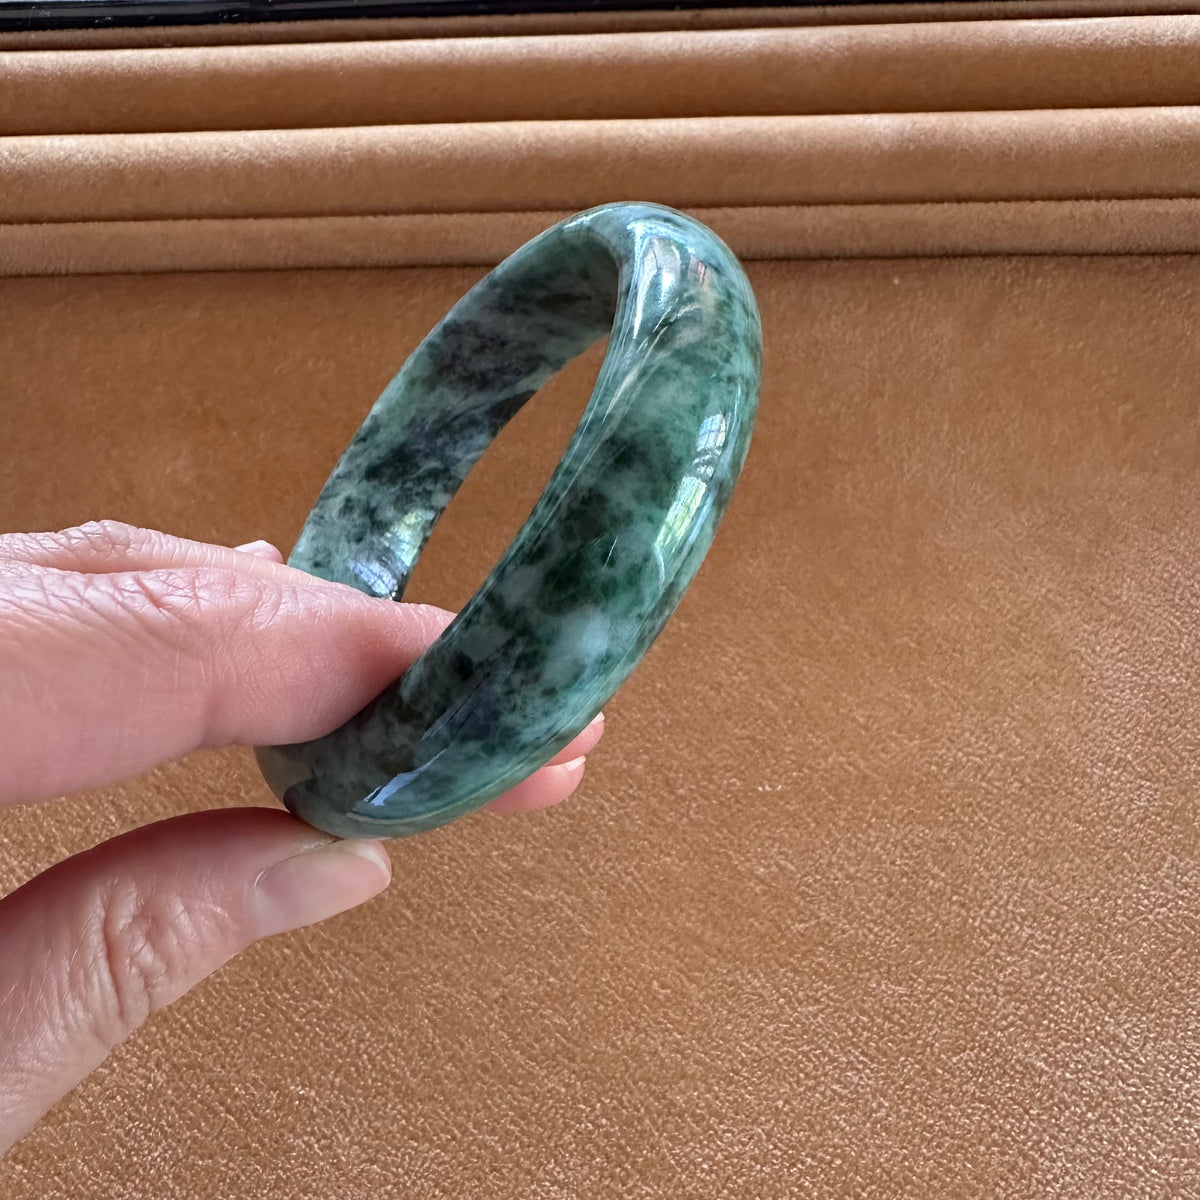 57.8mm Green Patterns Jade Bangle Bracelet